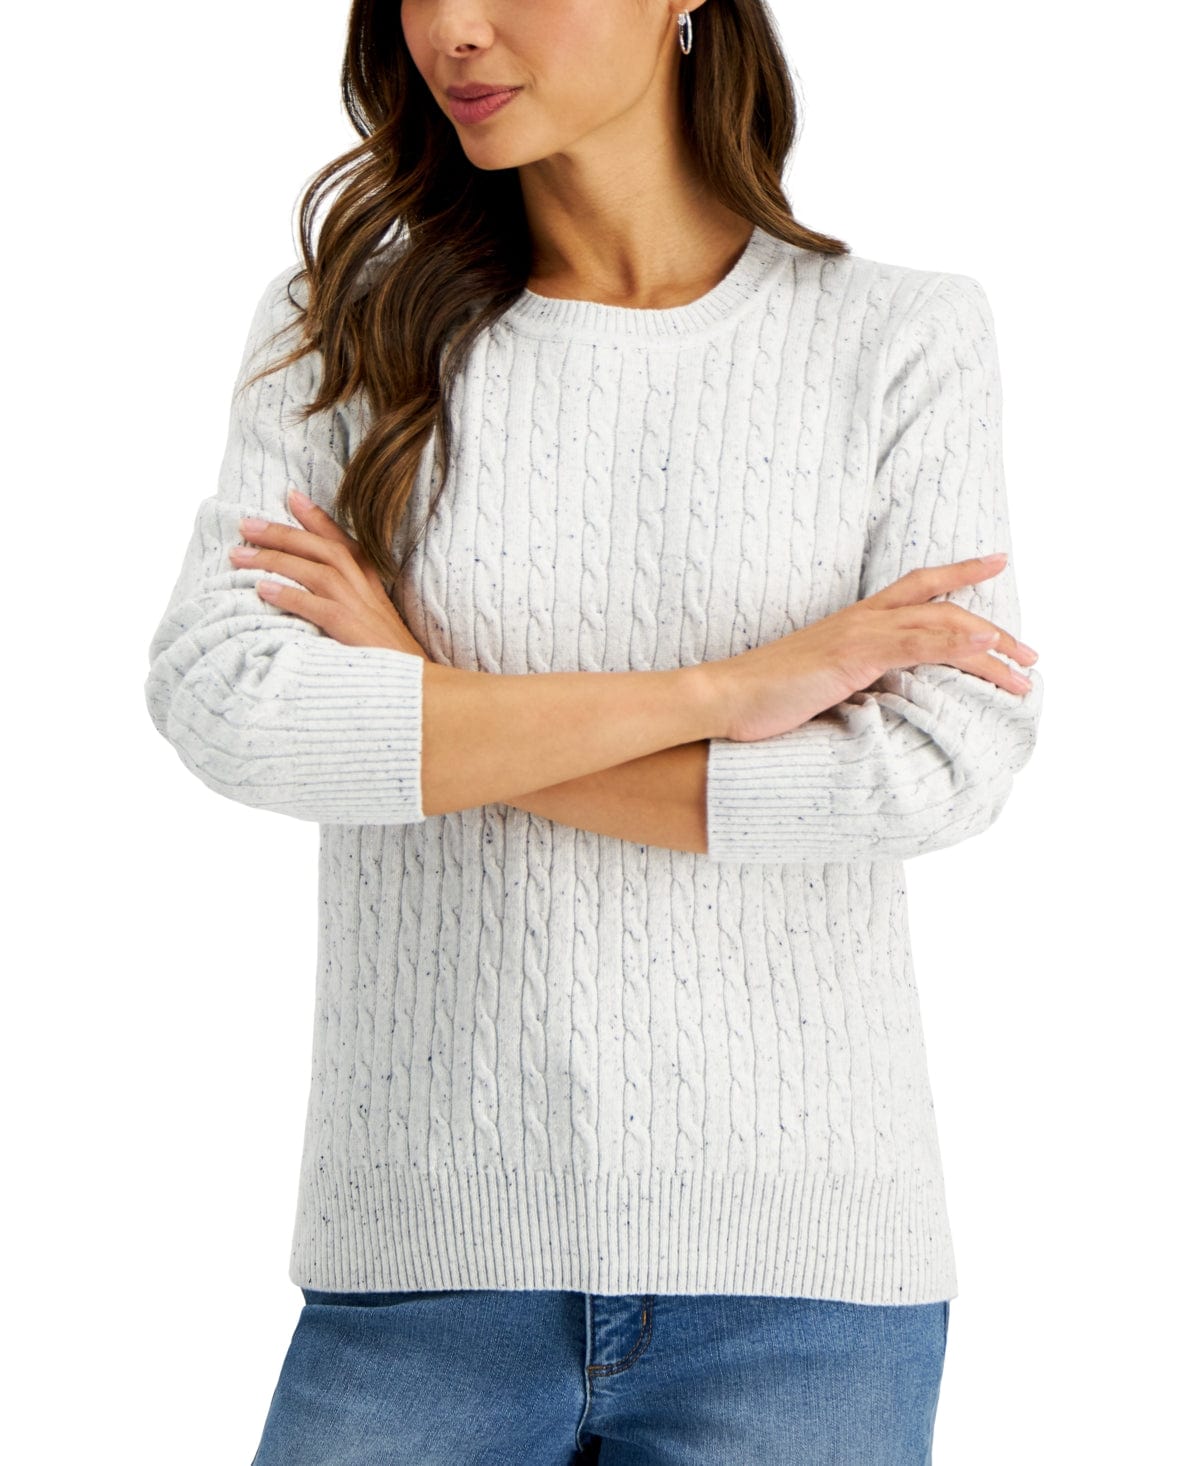 https://brandsandbeyond.me/cdn/shop/files/karen-scott-womens-tops-karen-scott-cable-knit-sweater-32133977014307.jpg?v=1696489257&width=1445